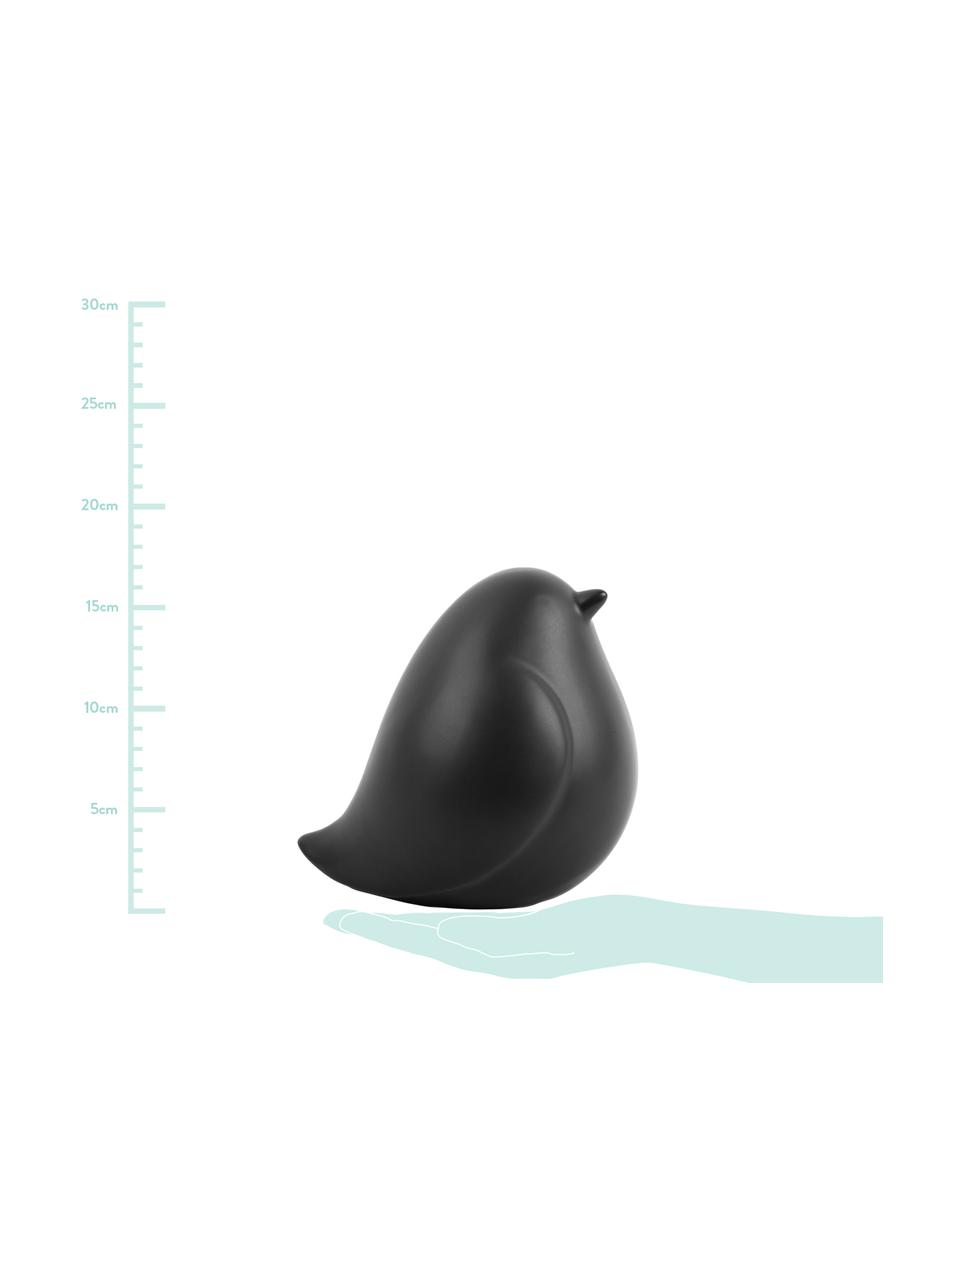 Objet déco Fat Bird, Céramique, Noir, larg. 14 cm, haut. 14 cm